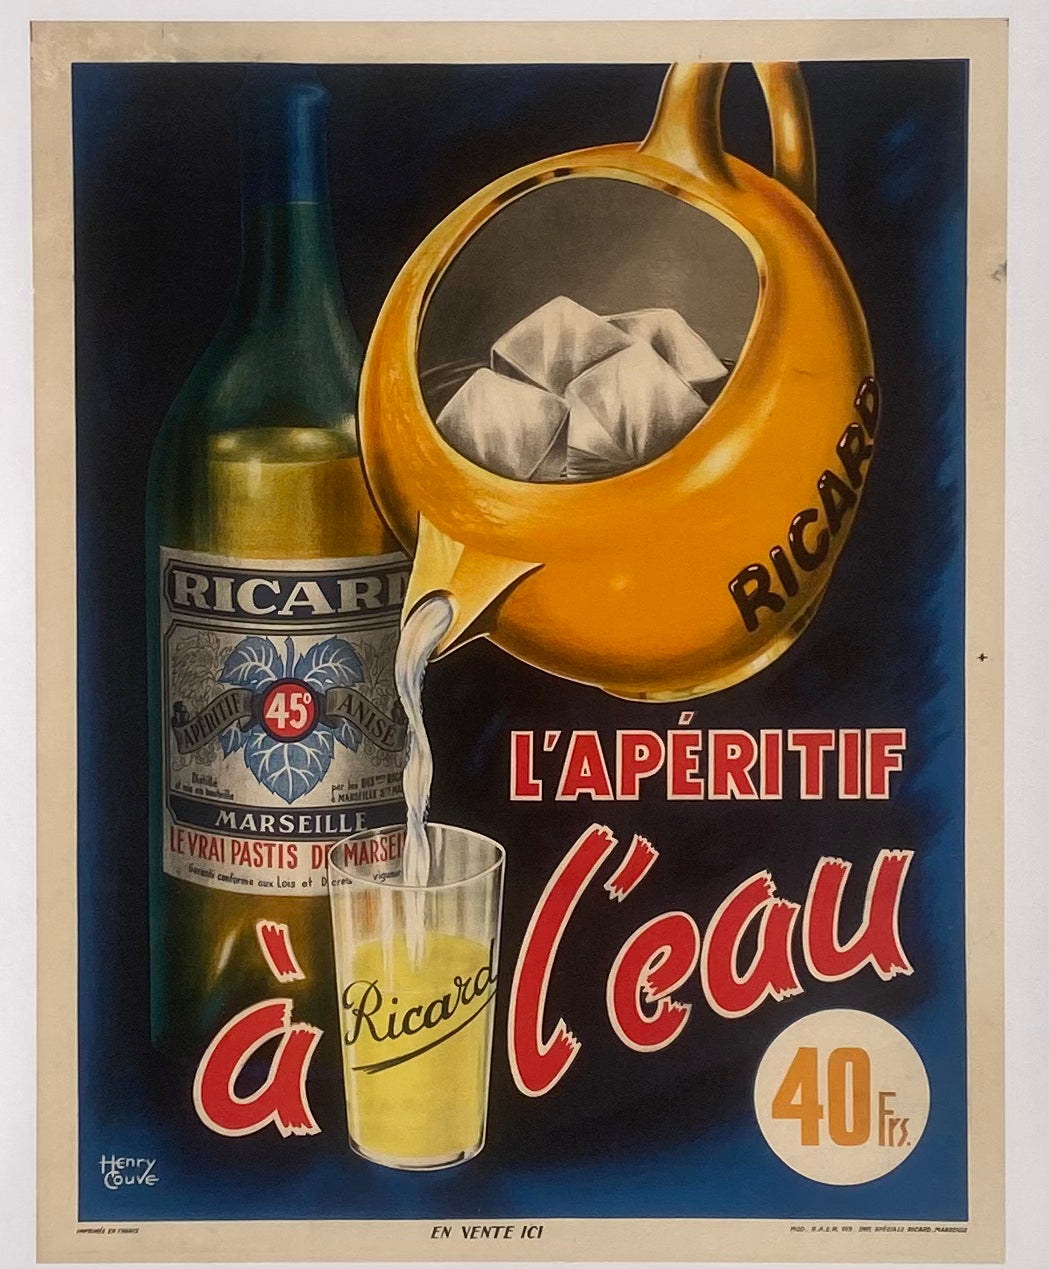 Rare Affiche Lithographique Ricard L'Apéritif à l'eau 40 Franc Henry Couve, 1960